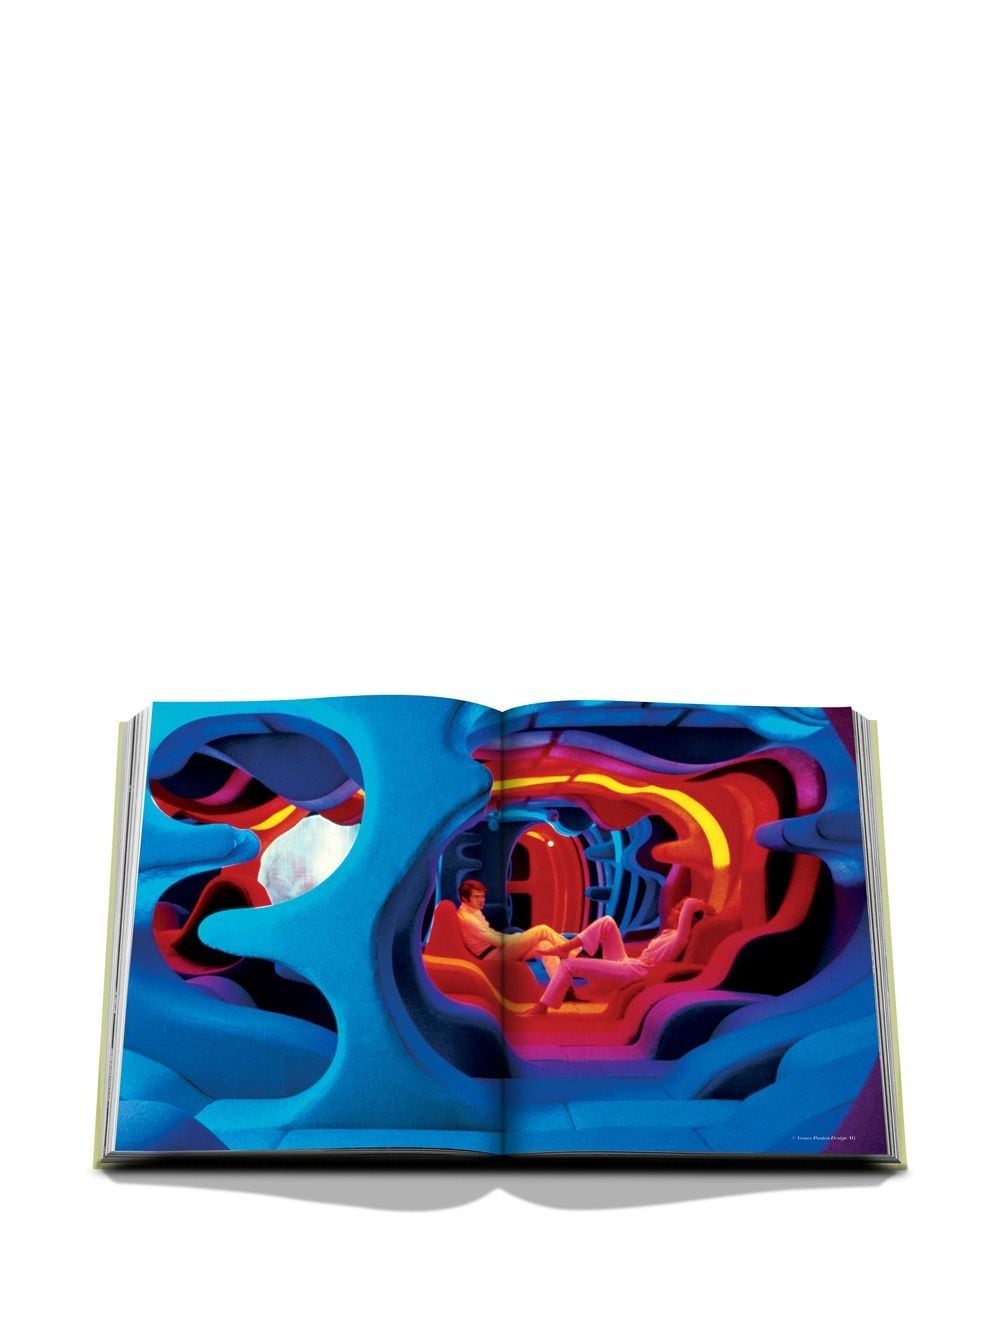 Assouline ASSOULINE- Pop Art Style Book